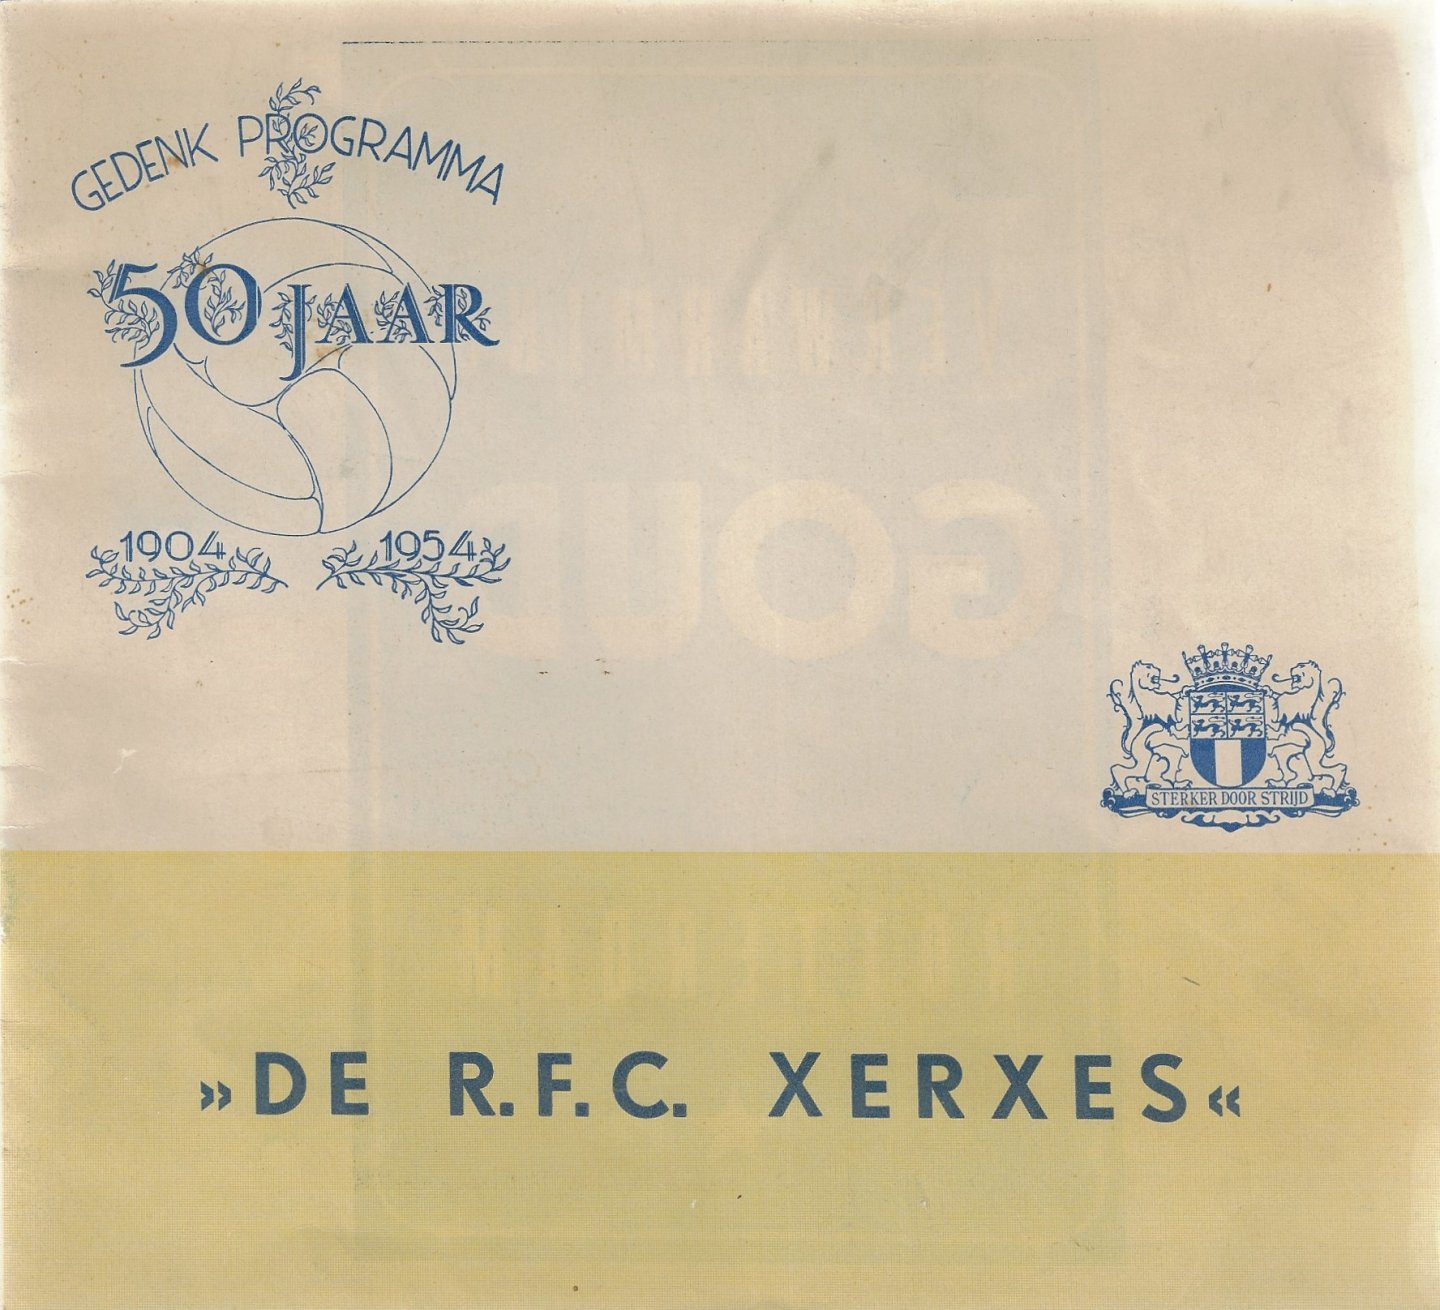 Diverse - Gedenk Programma 50 jaar 'De R.F.C. Xerxes' 1904-1954